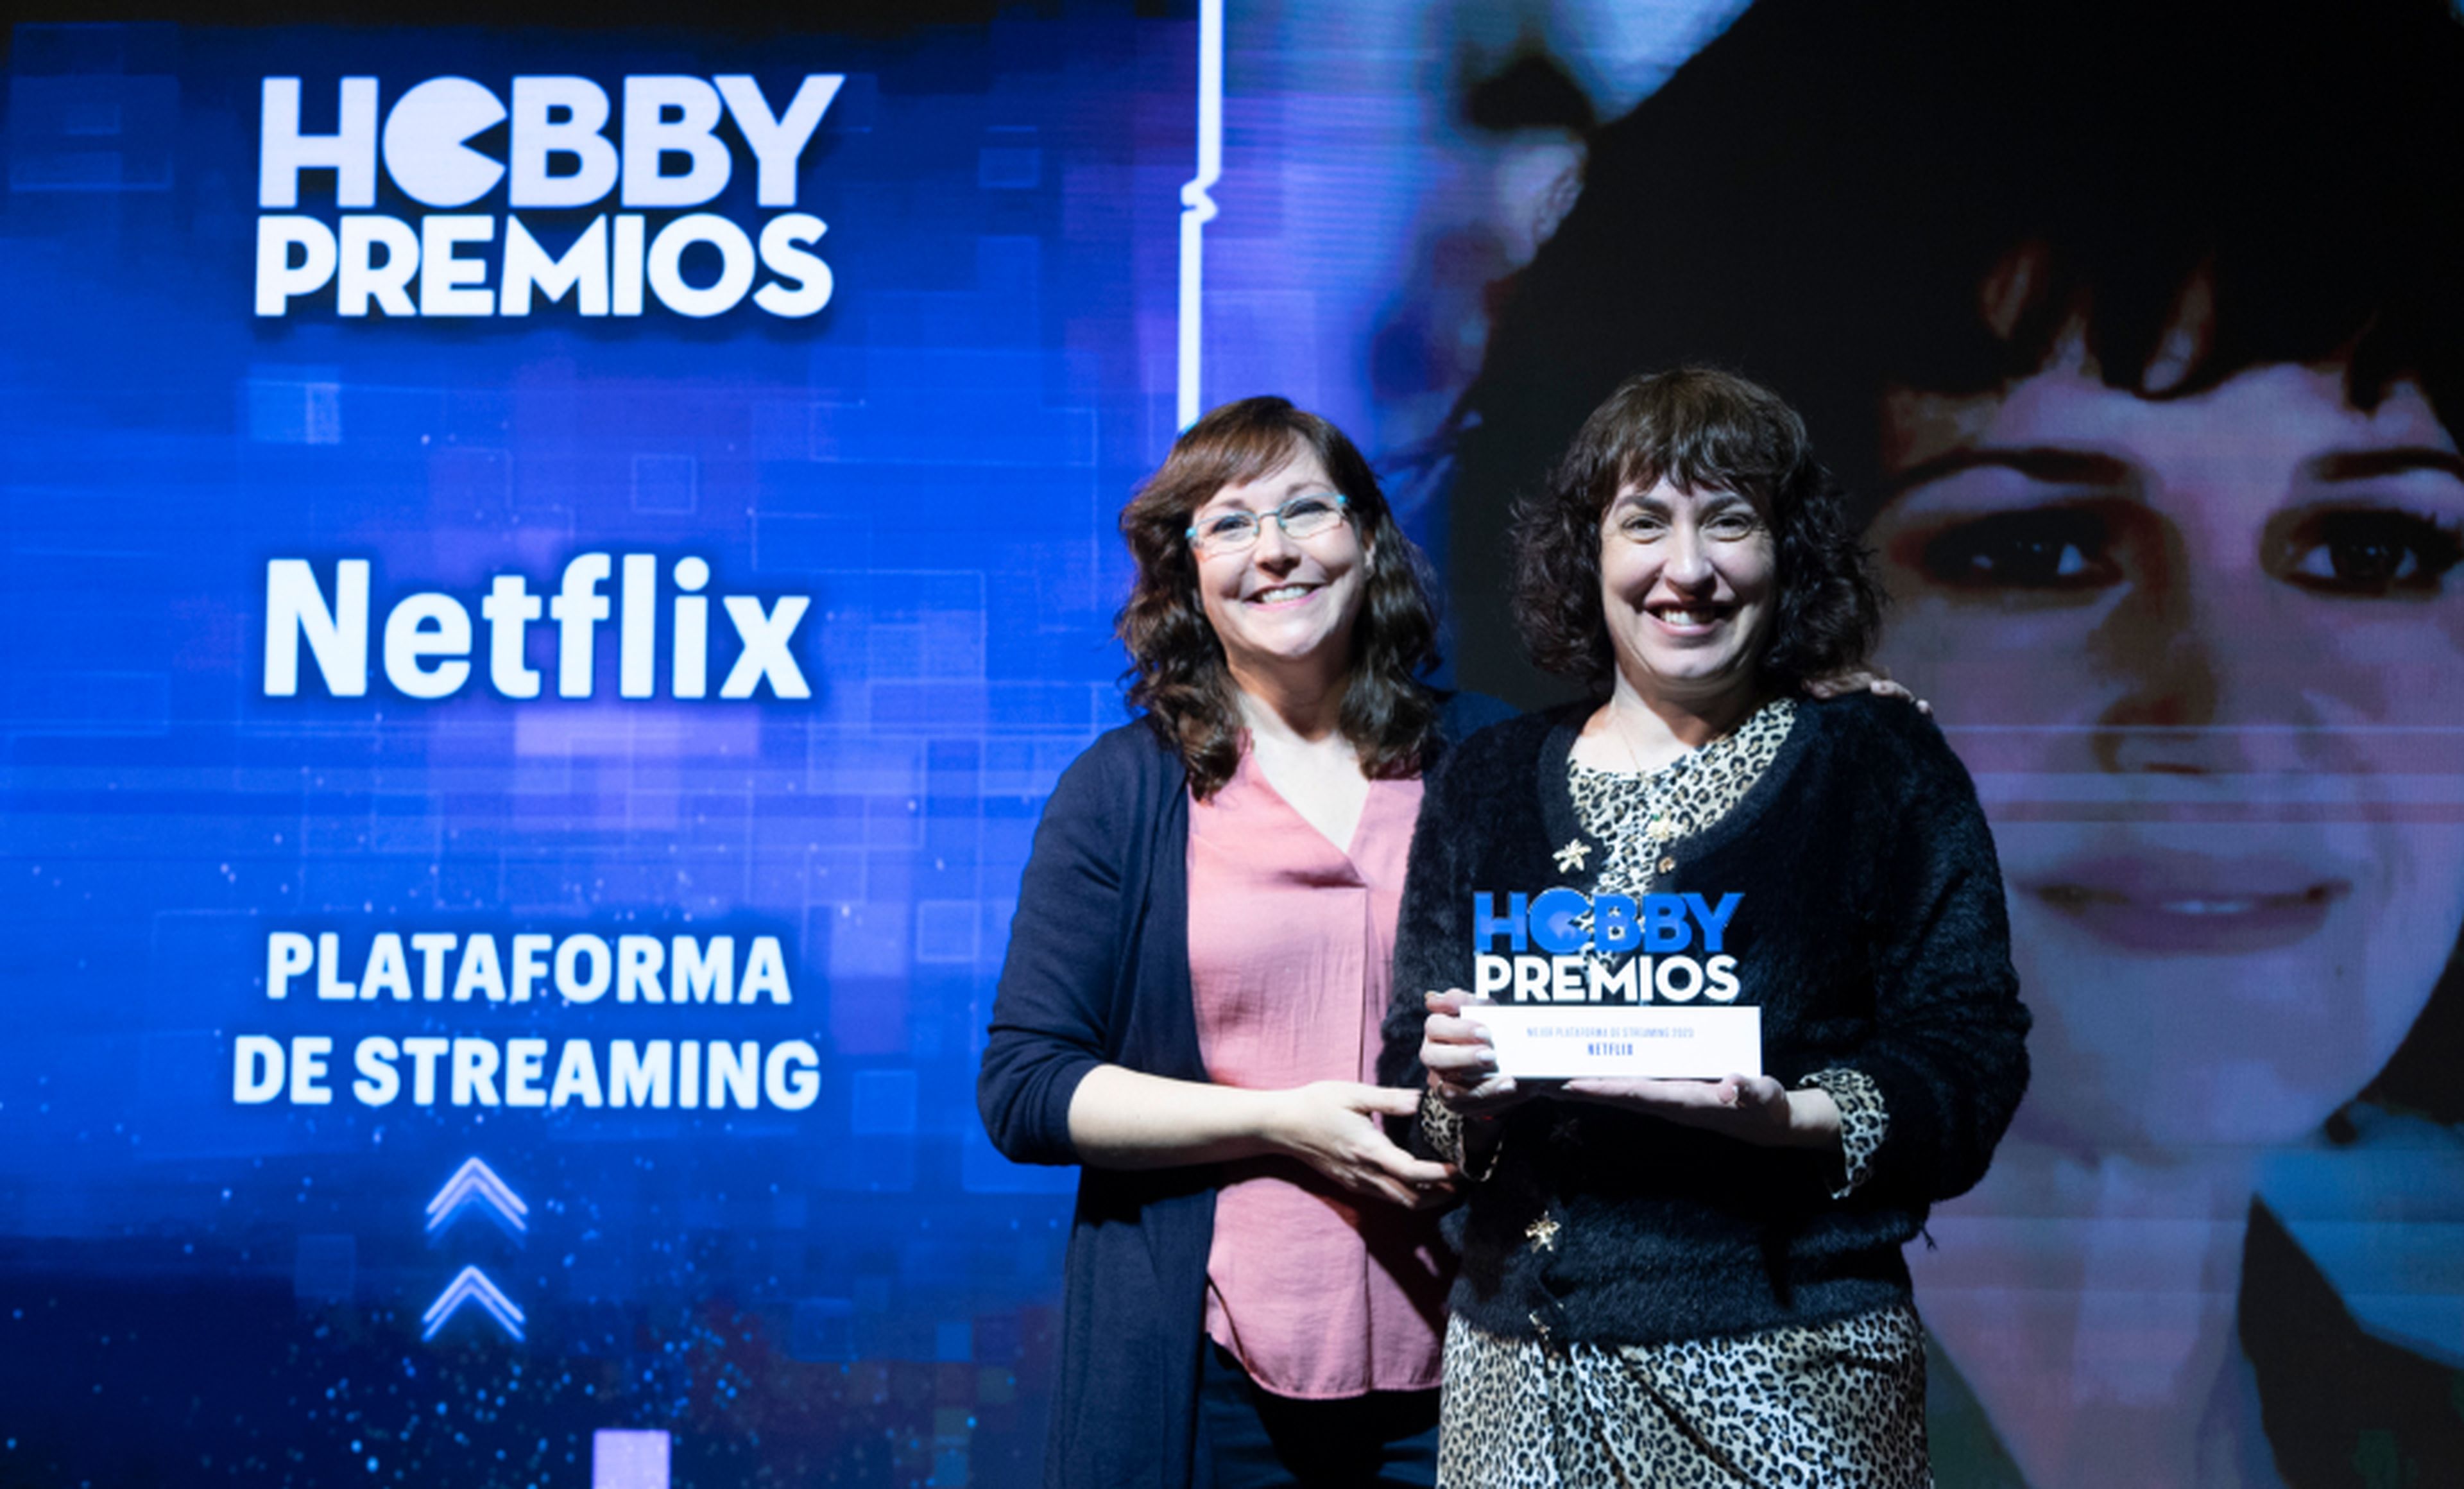 De izquierda a derecha: Raquel Hernández, redactora de HobbyCine entrega a Rut Rey, PR Senior de Netflix el premio a la plataforma de streaming preferida por la audiencia.